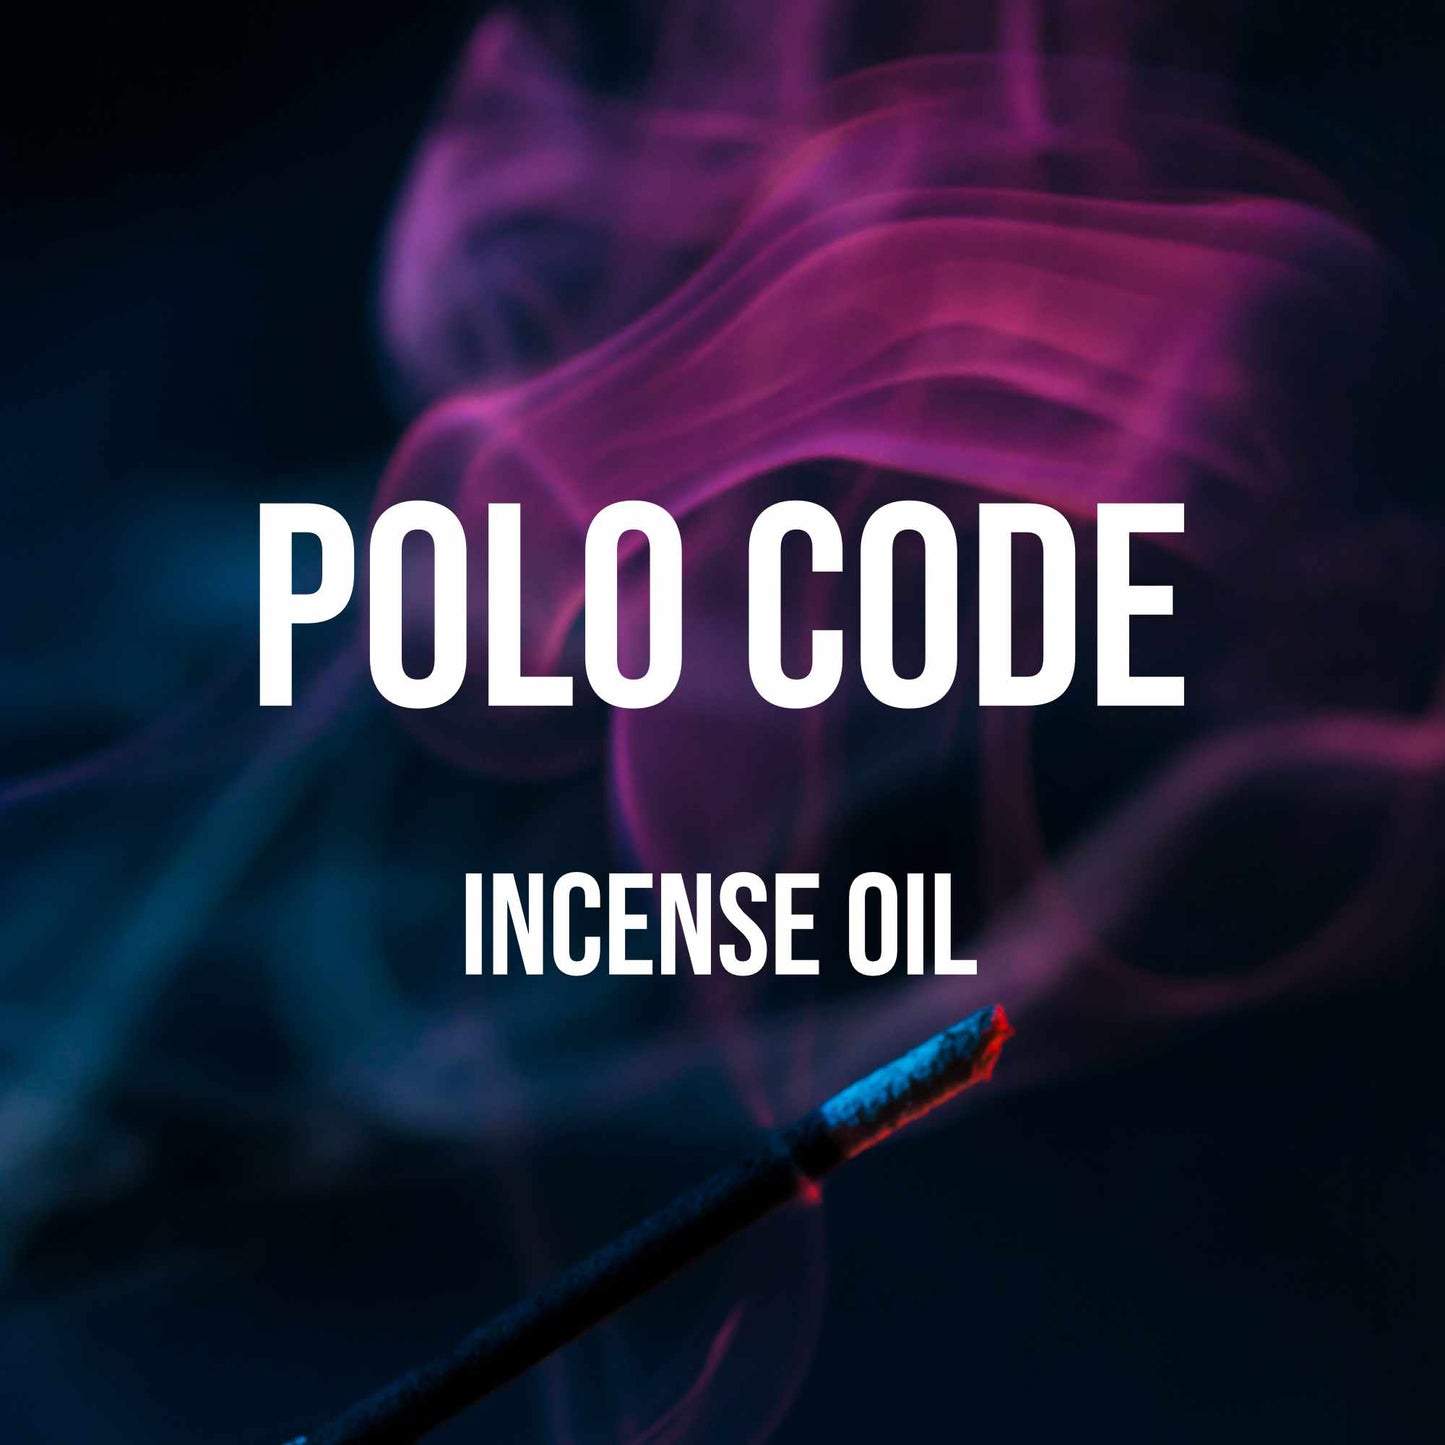 Polo Code Incense Oil